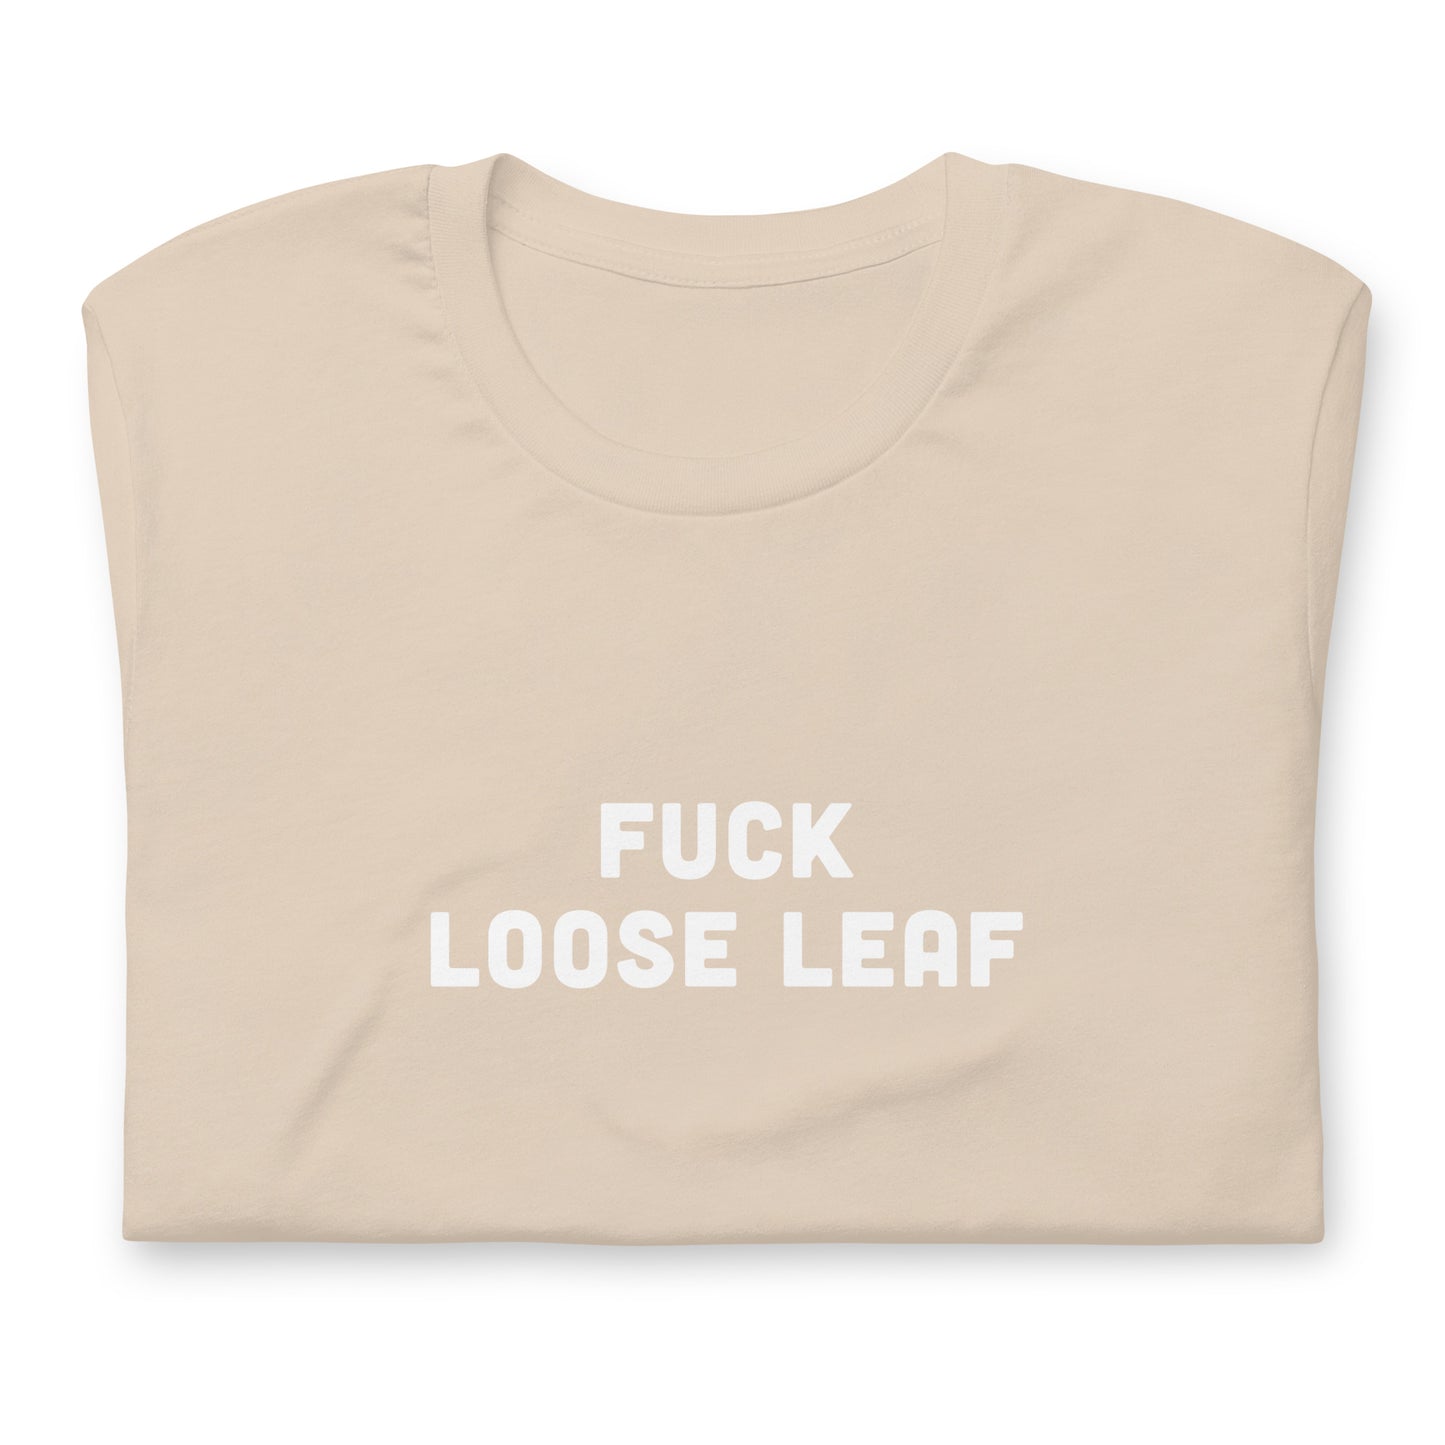 Fuck Loose Leaf T-Shirt Size L Color Asphalt